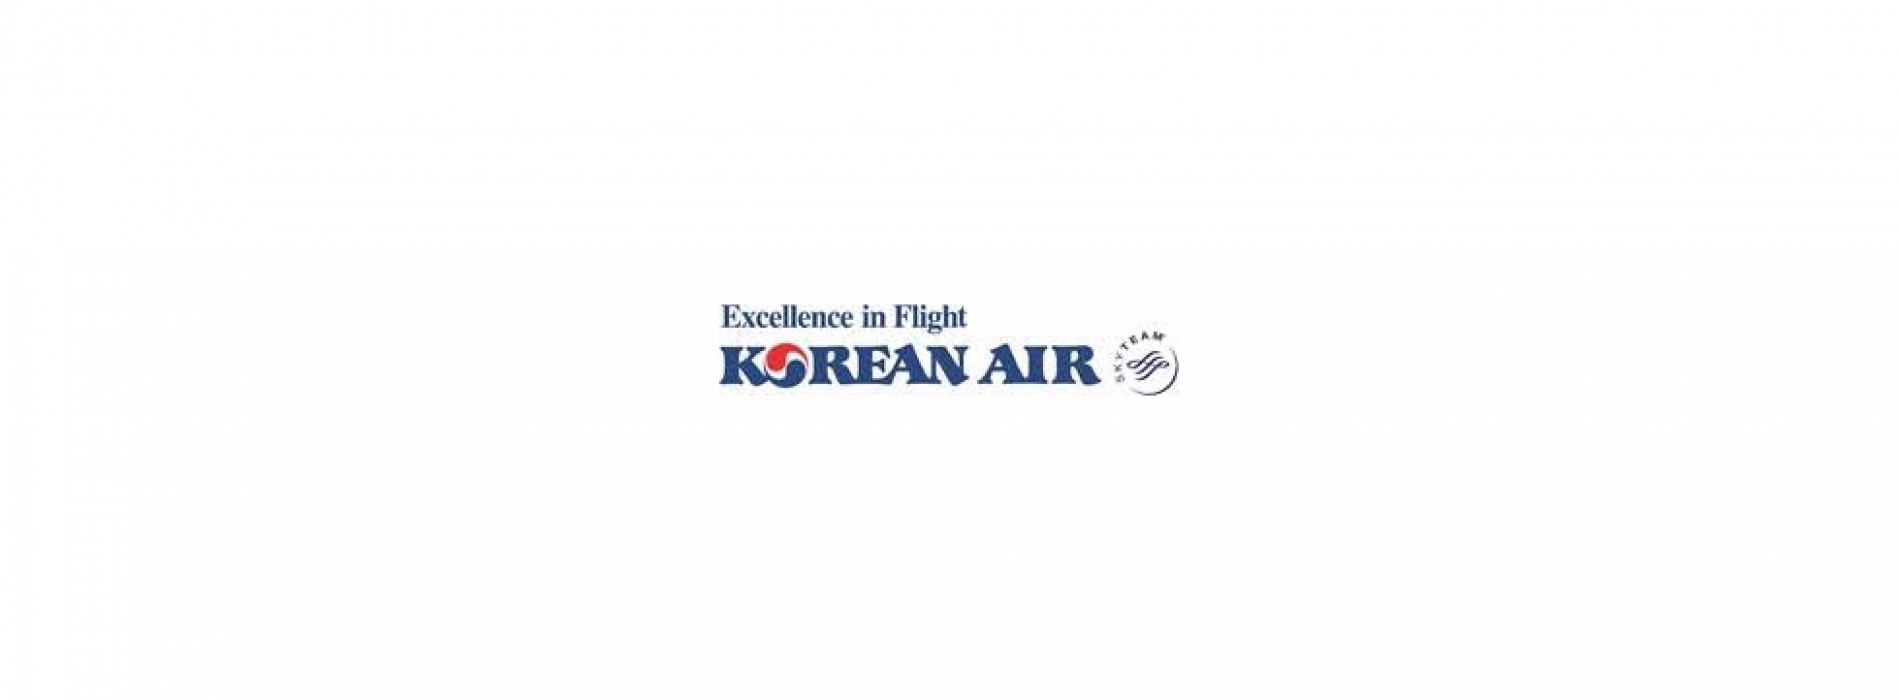 Korean Air commences flight service between Delhi and Incheon